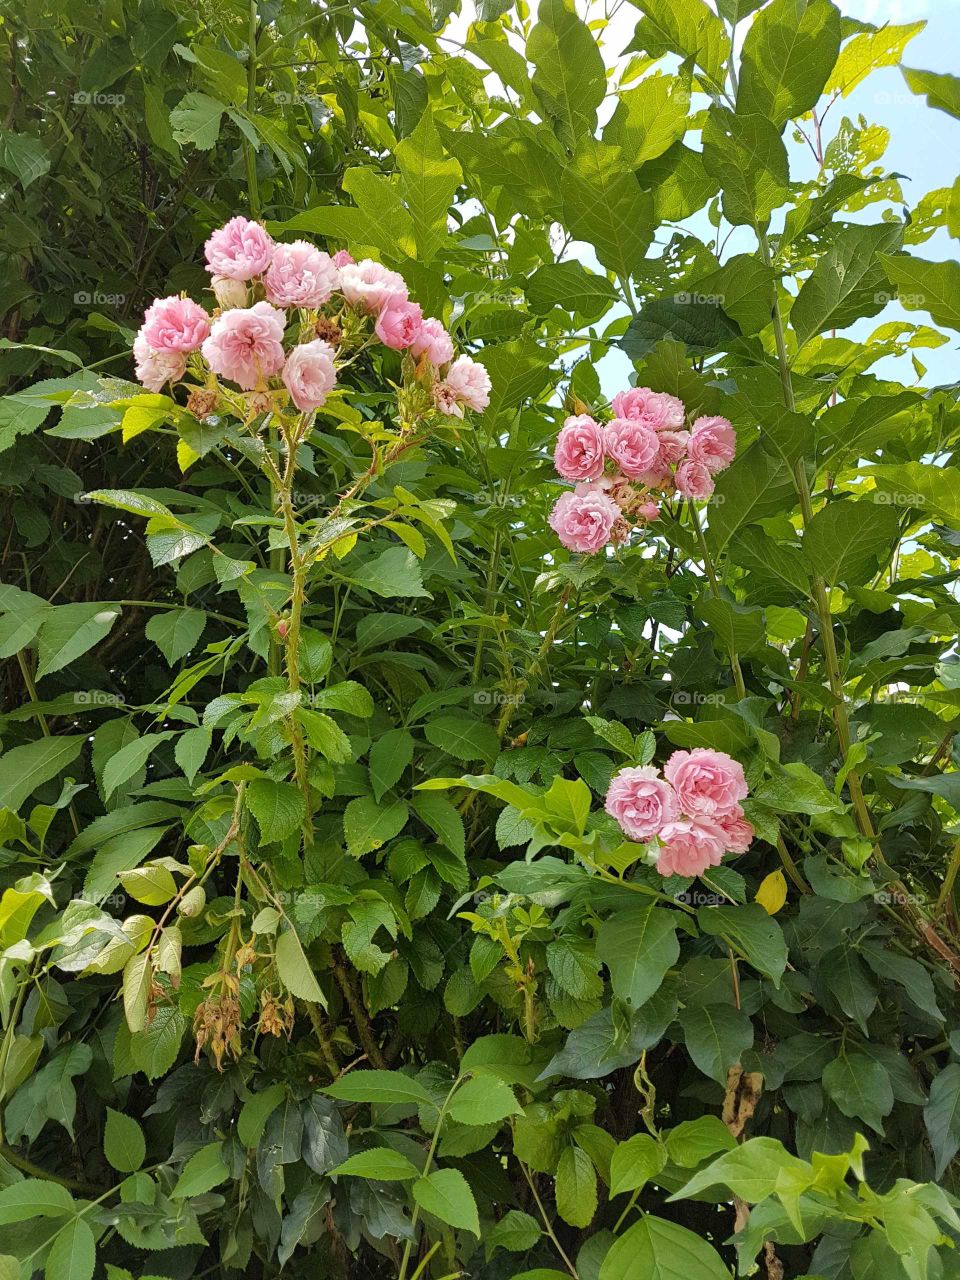 Mini roses